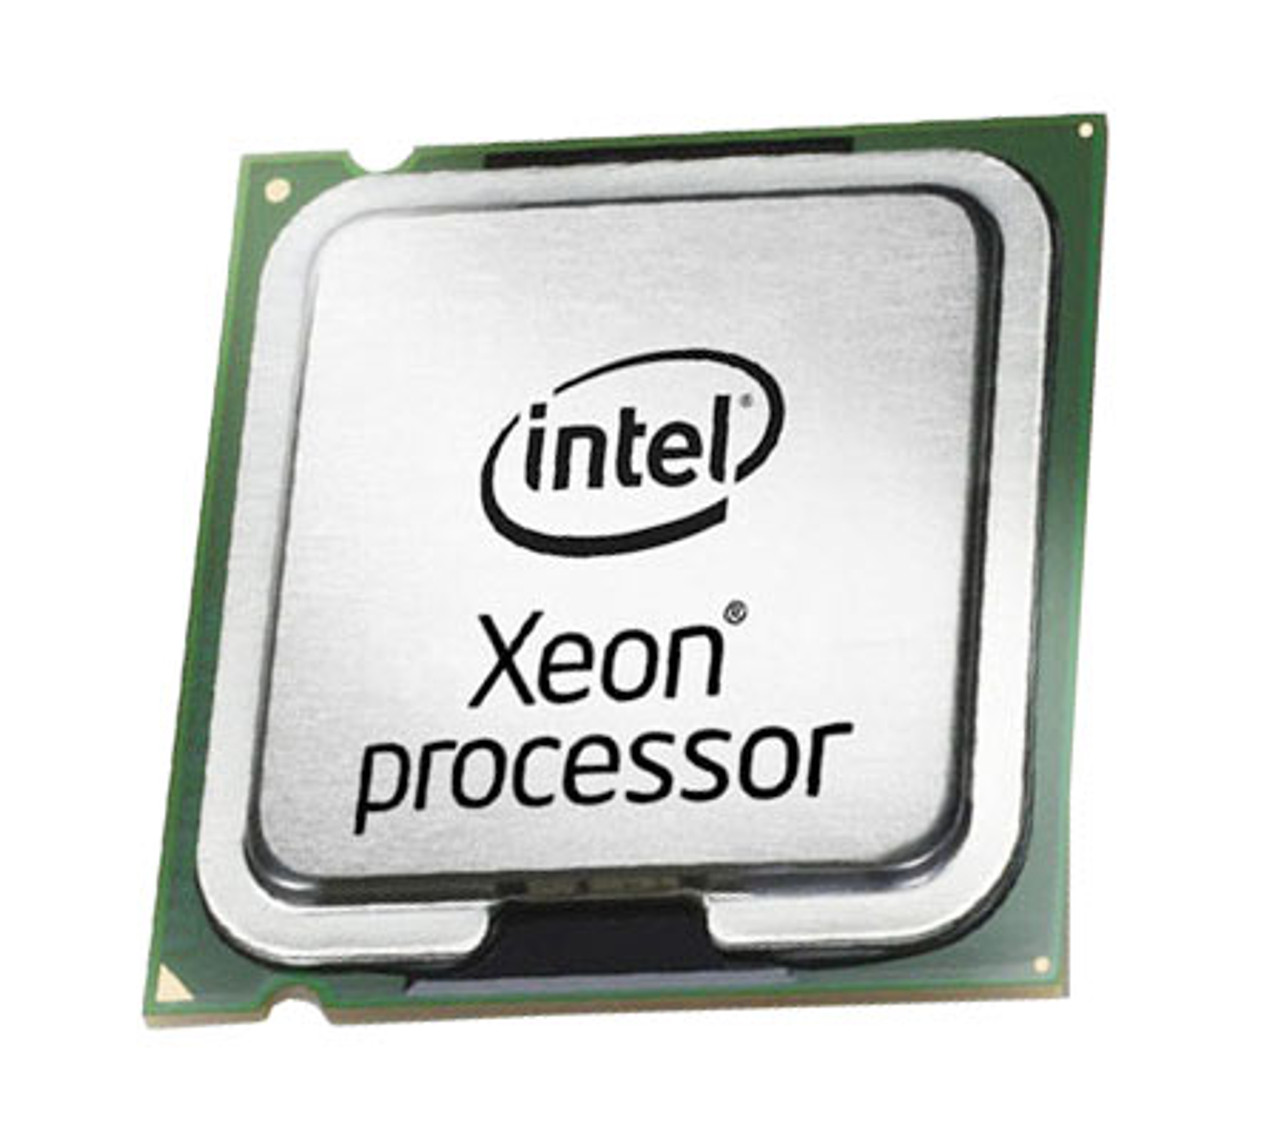 SLABR - Intel Xeon 5110 Dual Core 1.60GHz 1066MHz FSB 4MB L2 Cache Socket LGA771 Processor